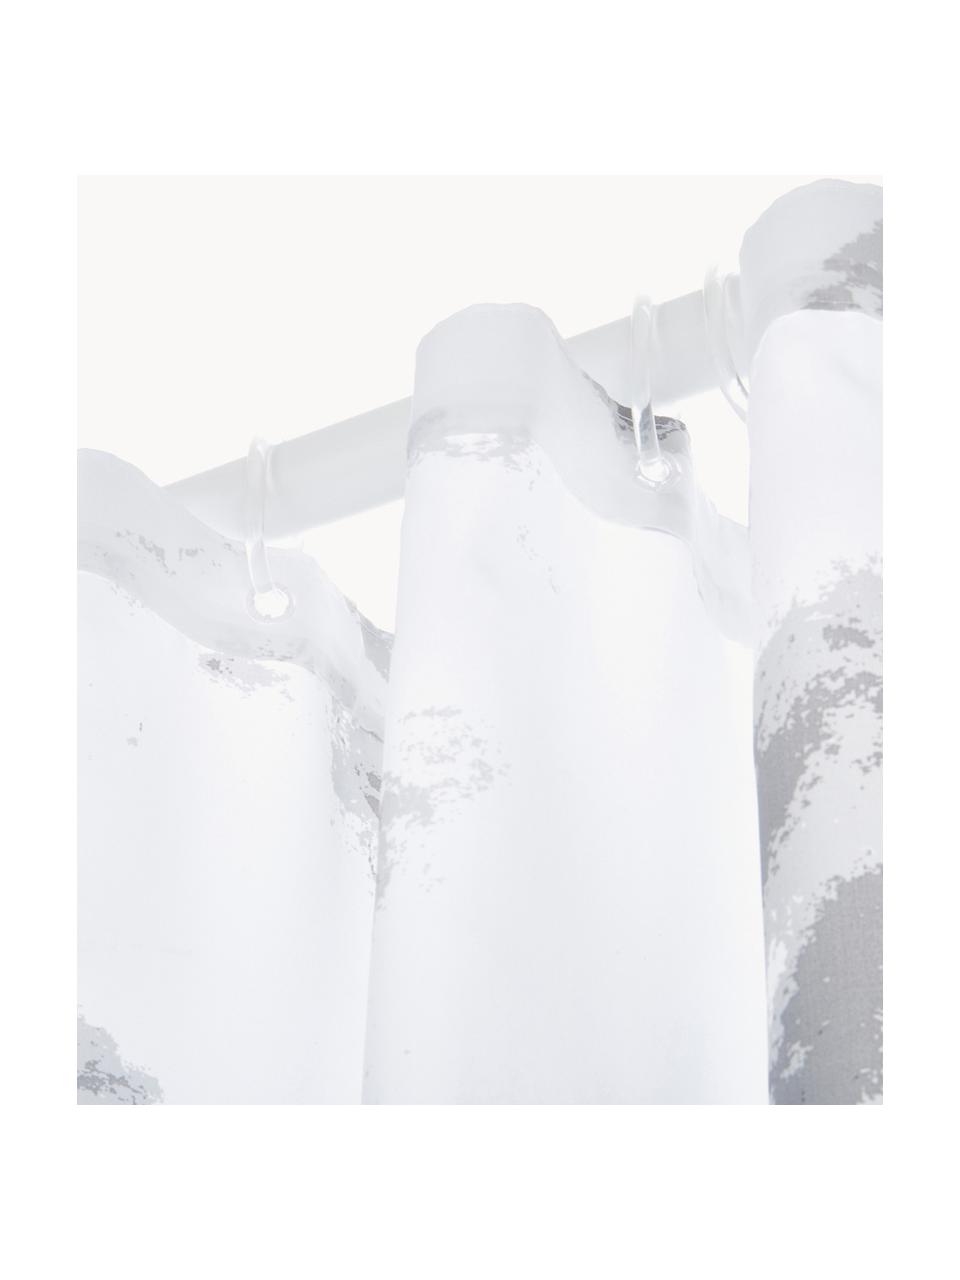 Duschvorhang Marble mit Marmor-Print, 100 % Polyester
Wasserabweisend, nicht wasserdicht, Weiß, Grautöne, B 180 x L 200 cm